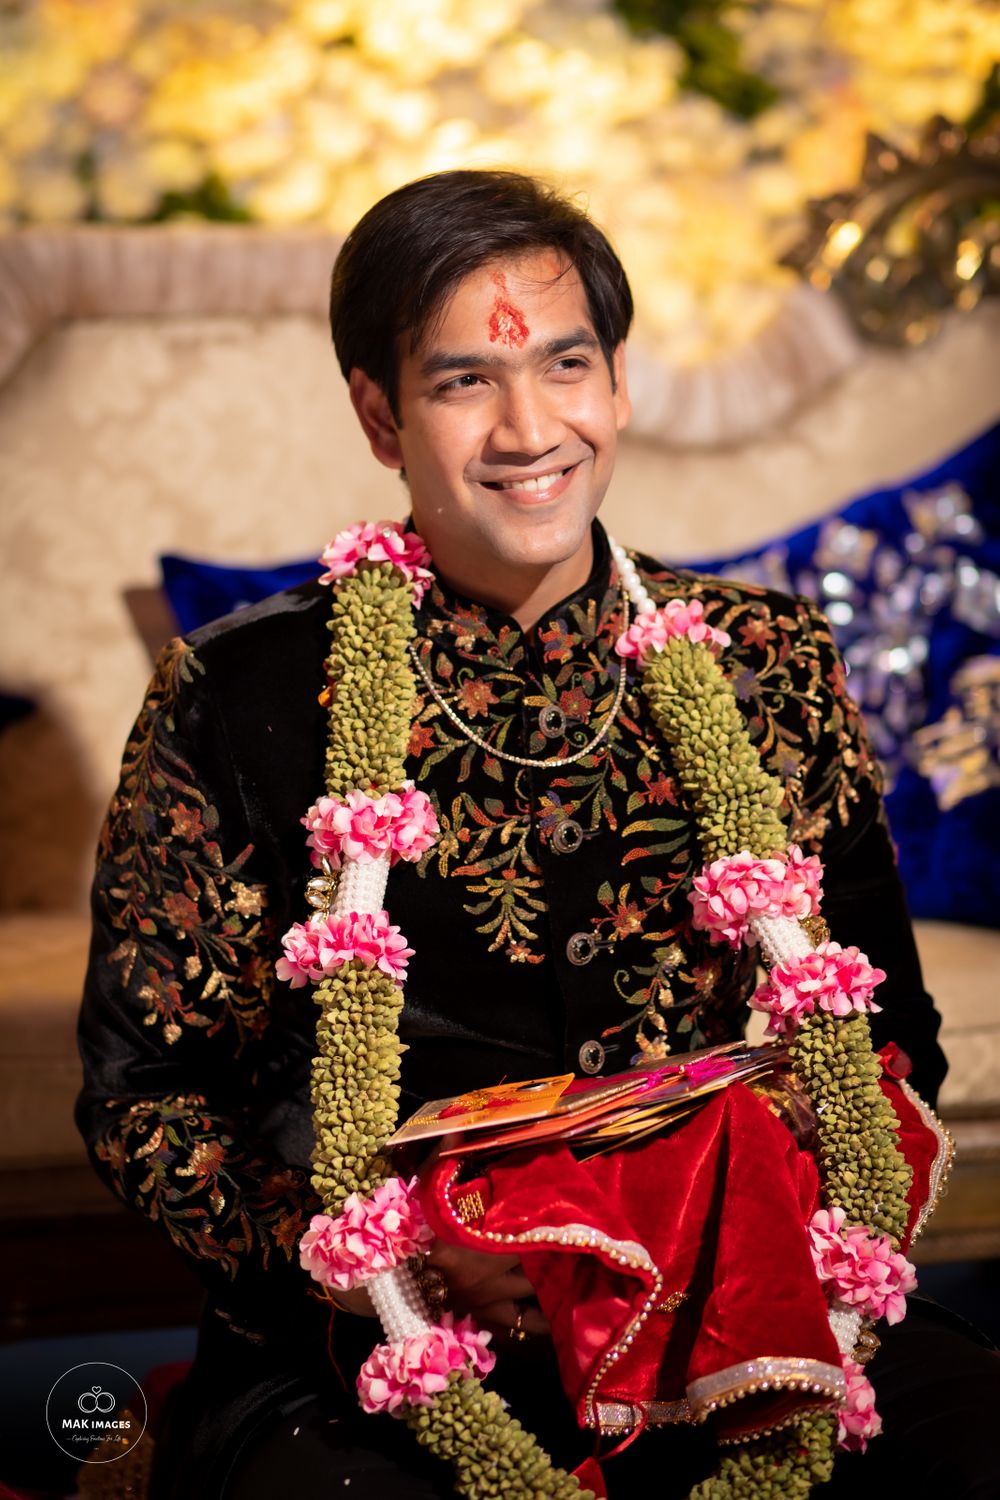 Photo From Aashima + Shubham (Haldi Mehndi Engagement) - By Mak Images (Artistic Wedding Photography)